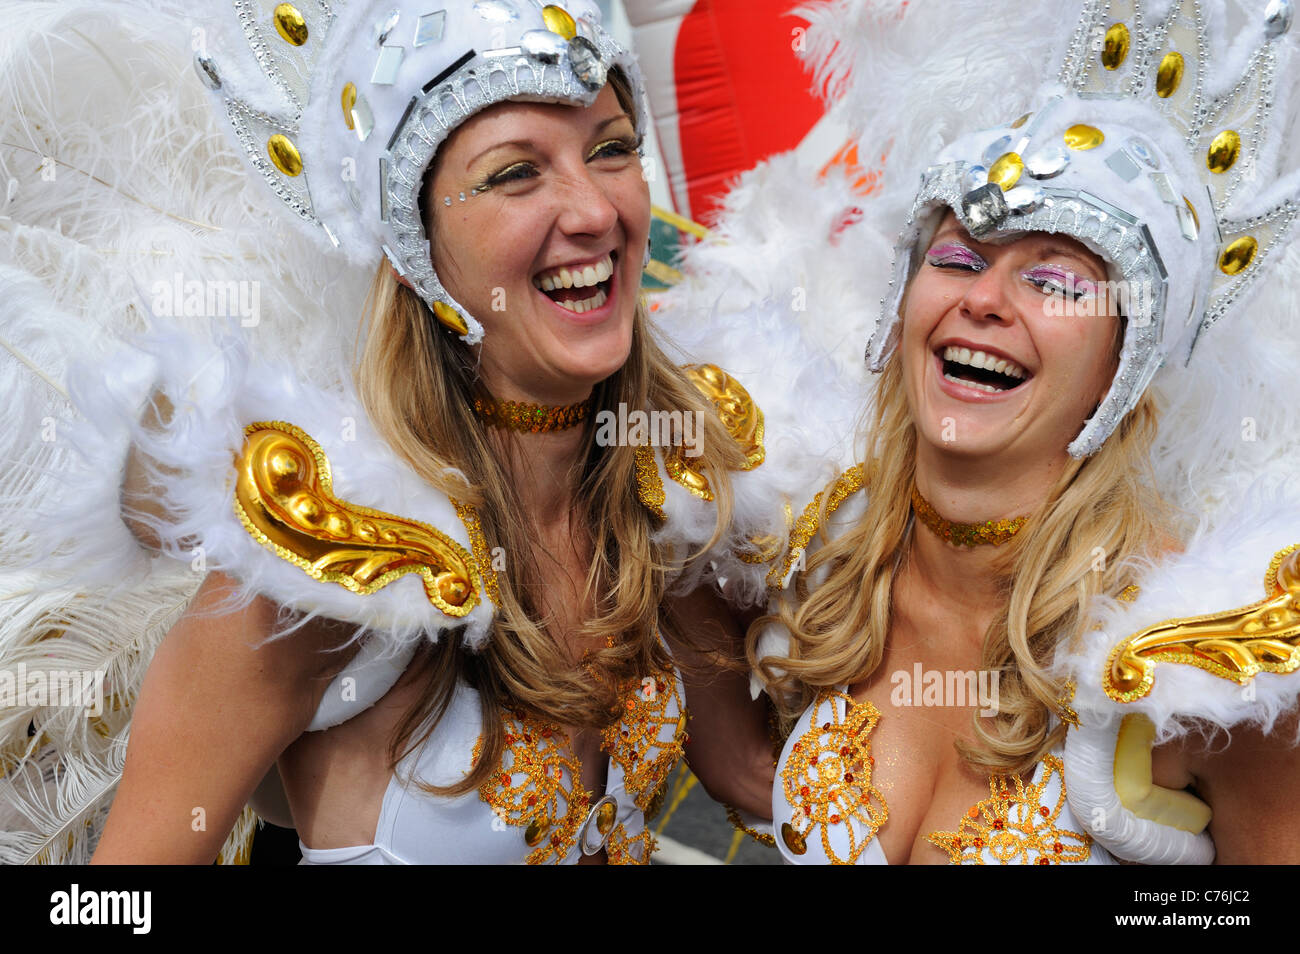 Gli artisti interpreti o esecutori di carnevale sorridente / ridere in piena felicità Foto Stock